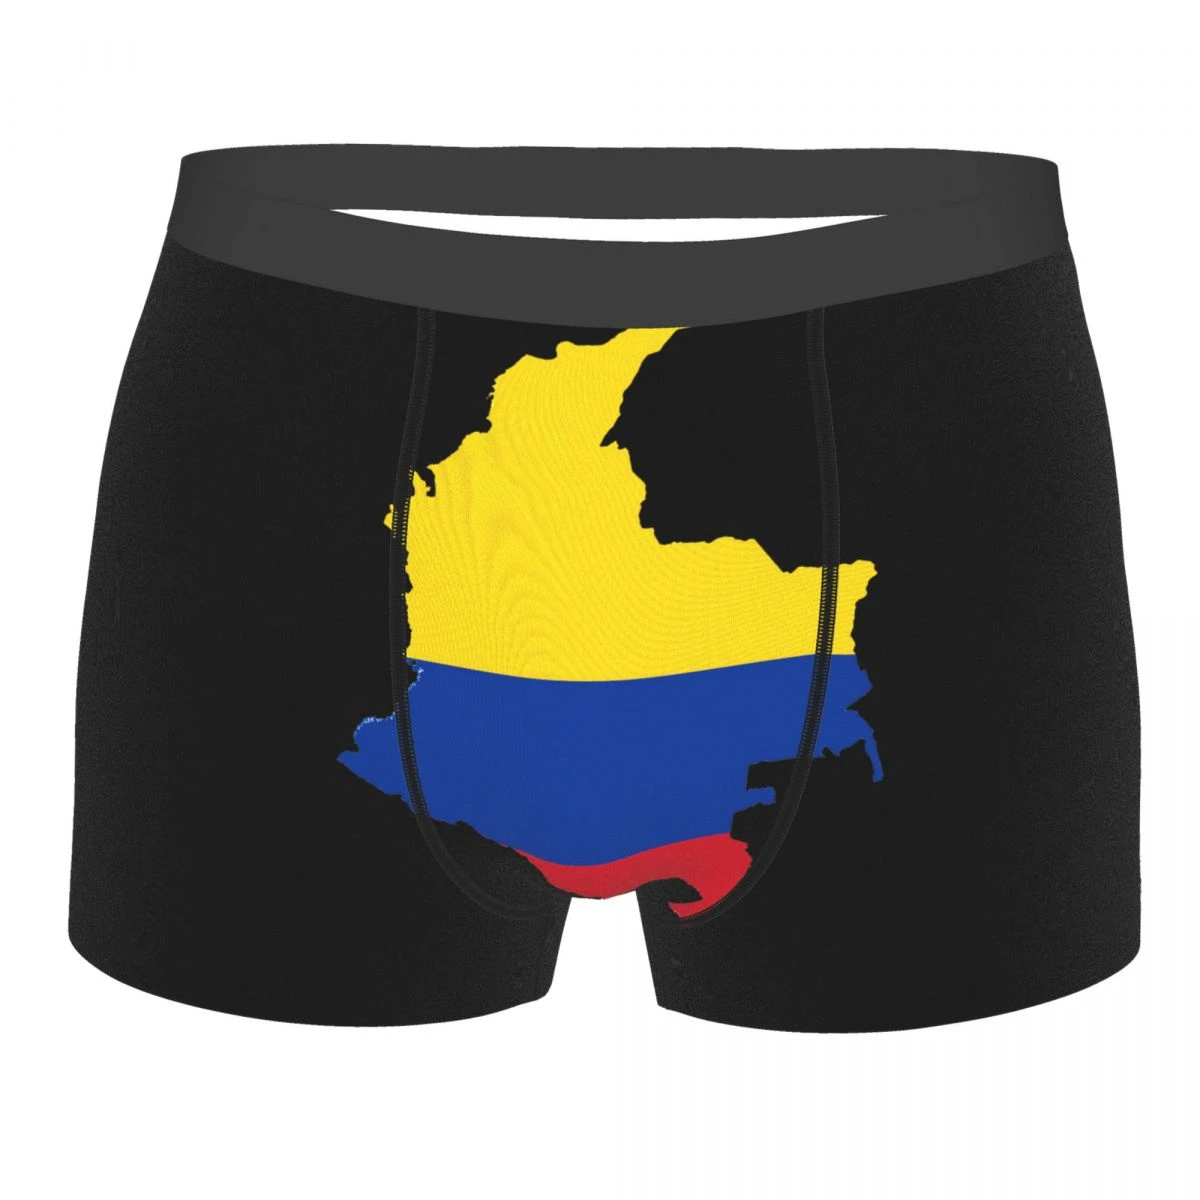 Calzoncillos con bandera de Colombia para hombre, R301, Humor Graphic, AliExpress